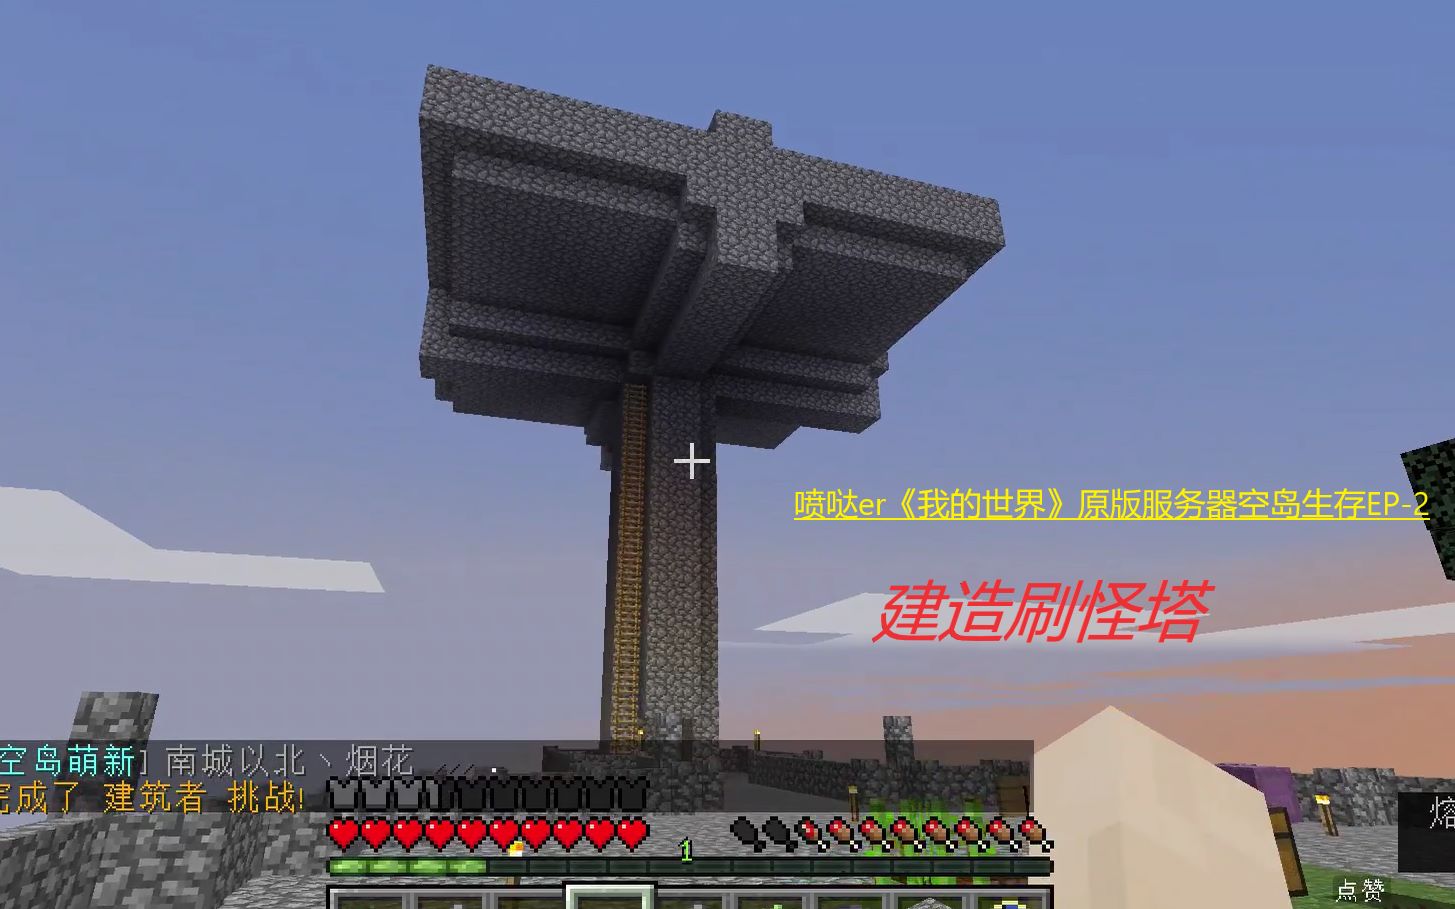 喷哒er 我的世界 原版服务器空岛生存 Ep2 建造刷怪塔 哔哩哔哩 つロ干杯 Bilibili